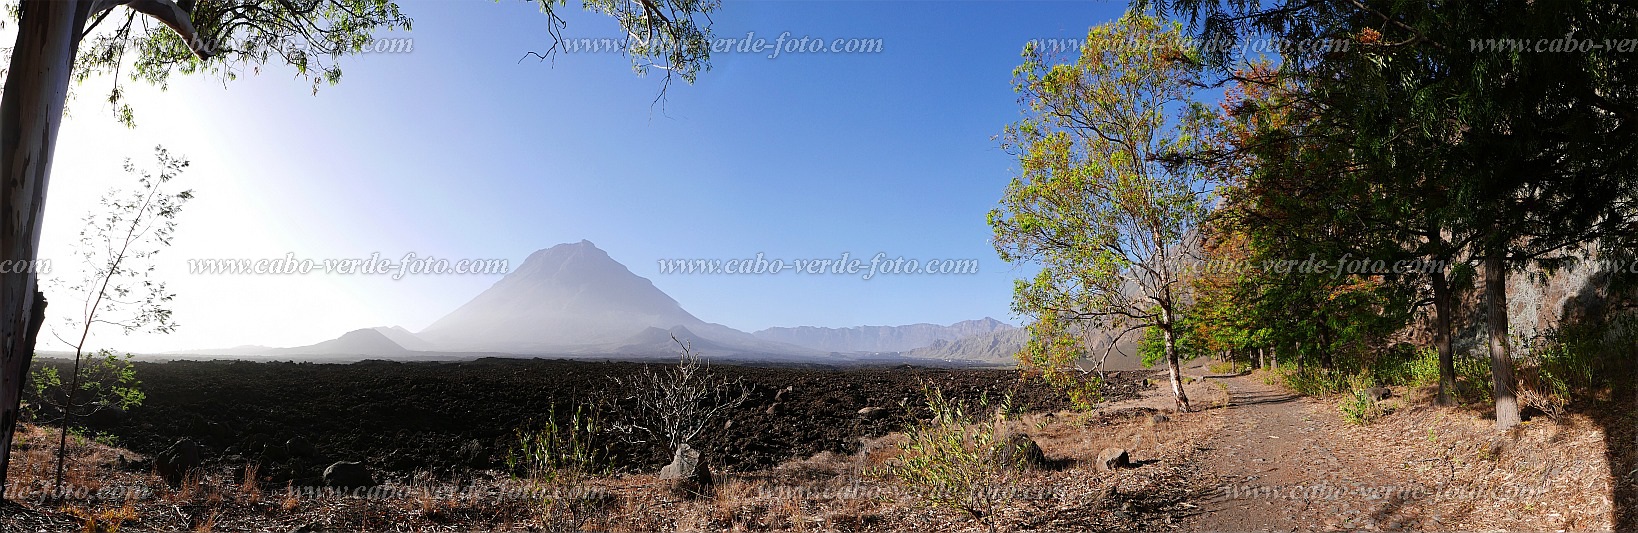 Insel: Fogo  Wanderweg:  Ort: Ch das Caldeiras Motiv: Vulkan Landschaft Motivgruppe: Landscape Mountain © Pitt Reitmaier www.Cabo-Verde-Foto.com